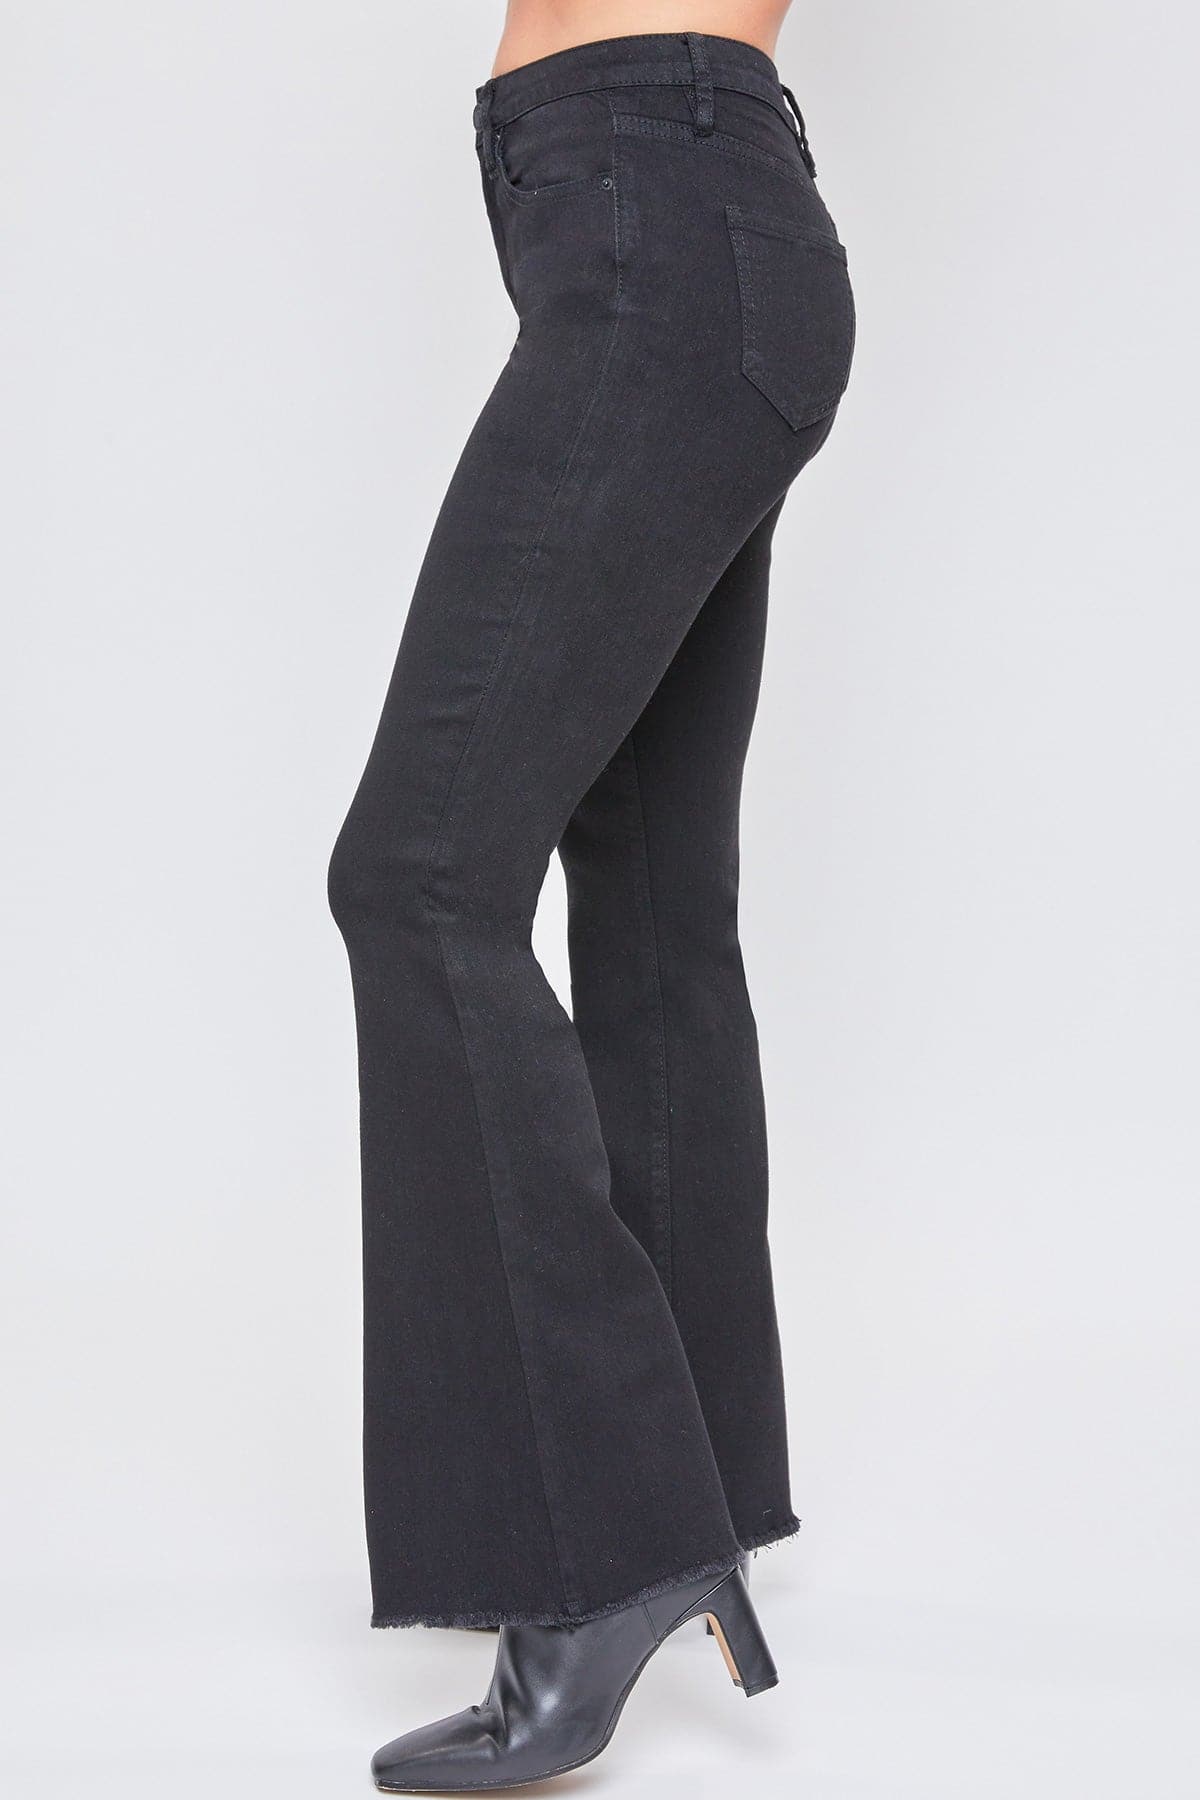 Women's Essential  Super Flare Jeans - Regular Inseam